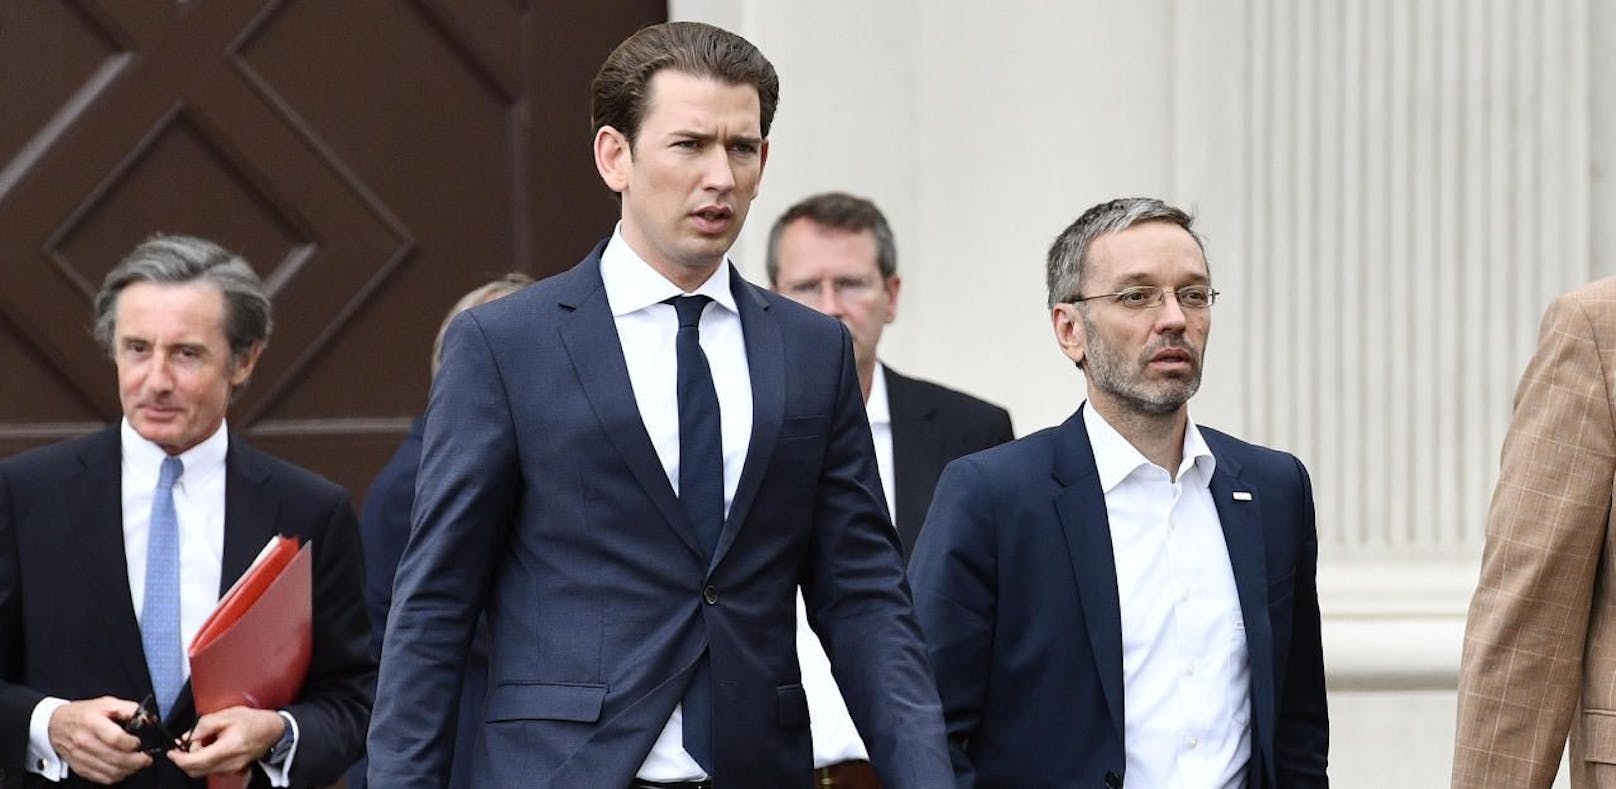 Der damalige Bundeskanzler Sebastian Kurz (ÖVP) mit dem damaligen Innenminister Herbert Kickl (FPÖ) im Juni 2018. Mittlerweile will Kurz mit Kickl nichts mehr zu tun haben.